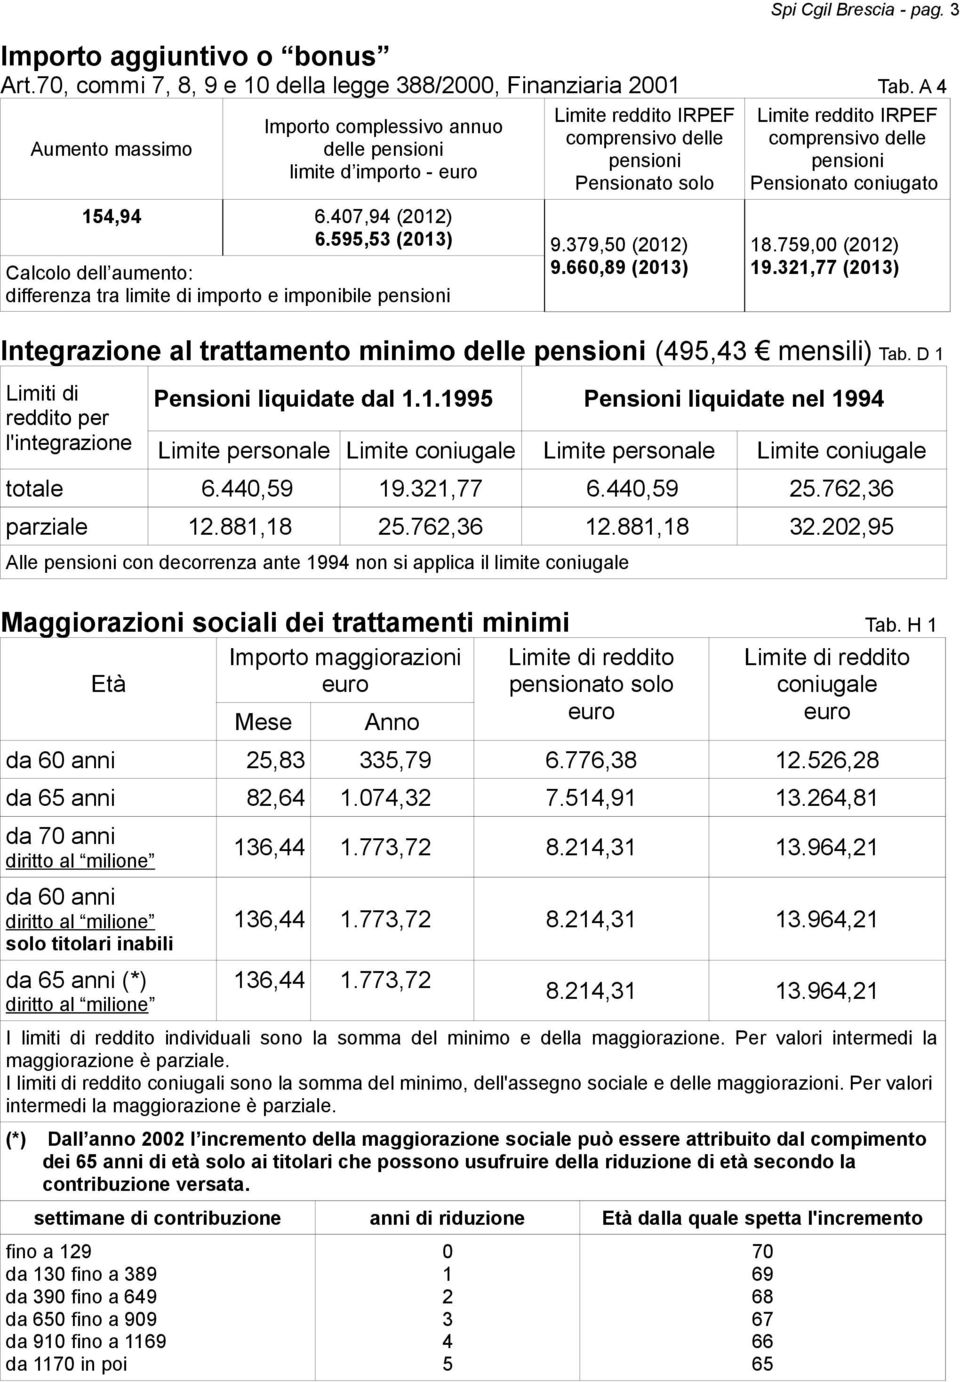 379,50 (2012) Calcolo dell aumento: 9.660,89 (2013) differenza tra limite di importo e imponibile pensioni Limite reddito IRPEF comprensivo delle pensioni Pensionato coniugato 18.759,00 (2012) 19.